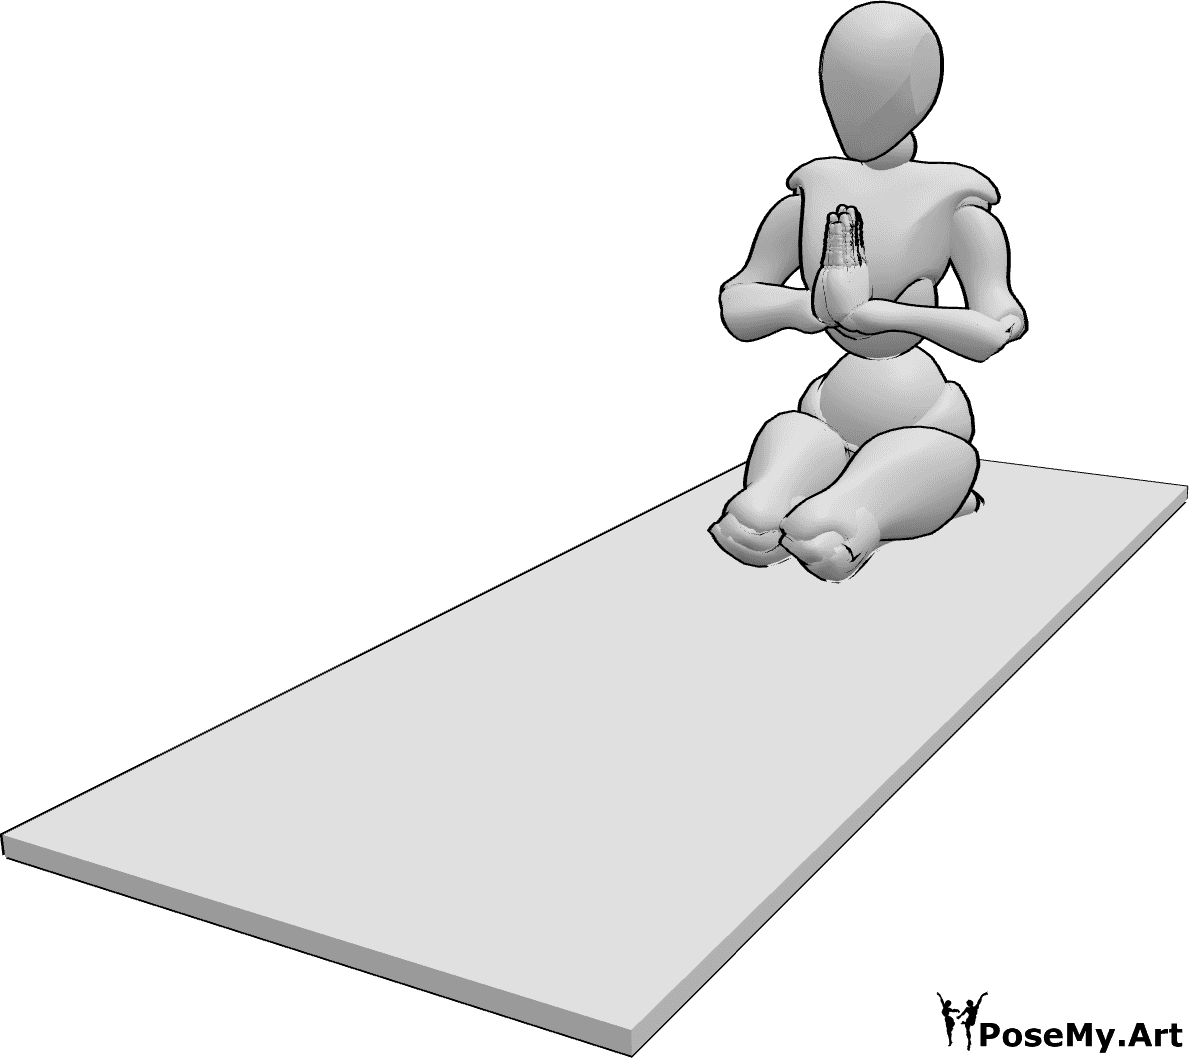 Posen-Referenz- Weibliche Yoga-Pose - Frau macht eine Yoga-Pose